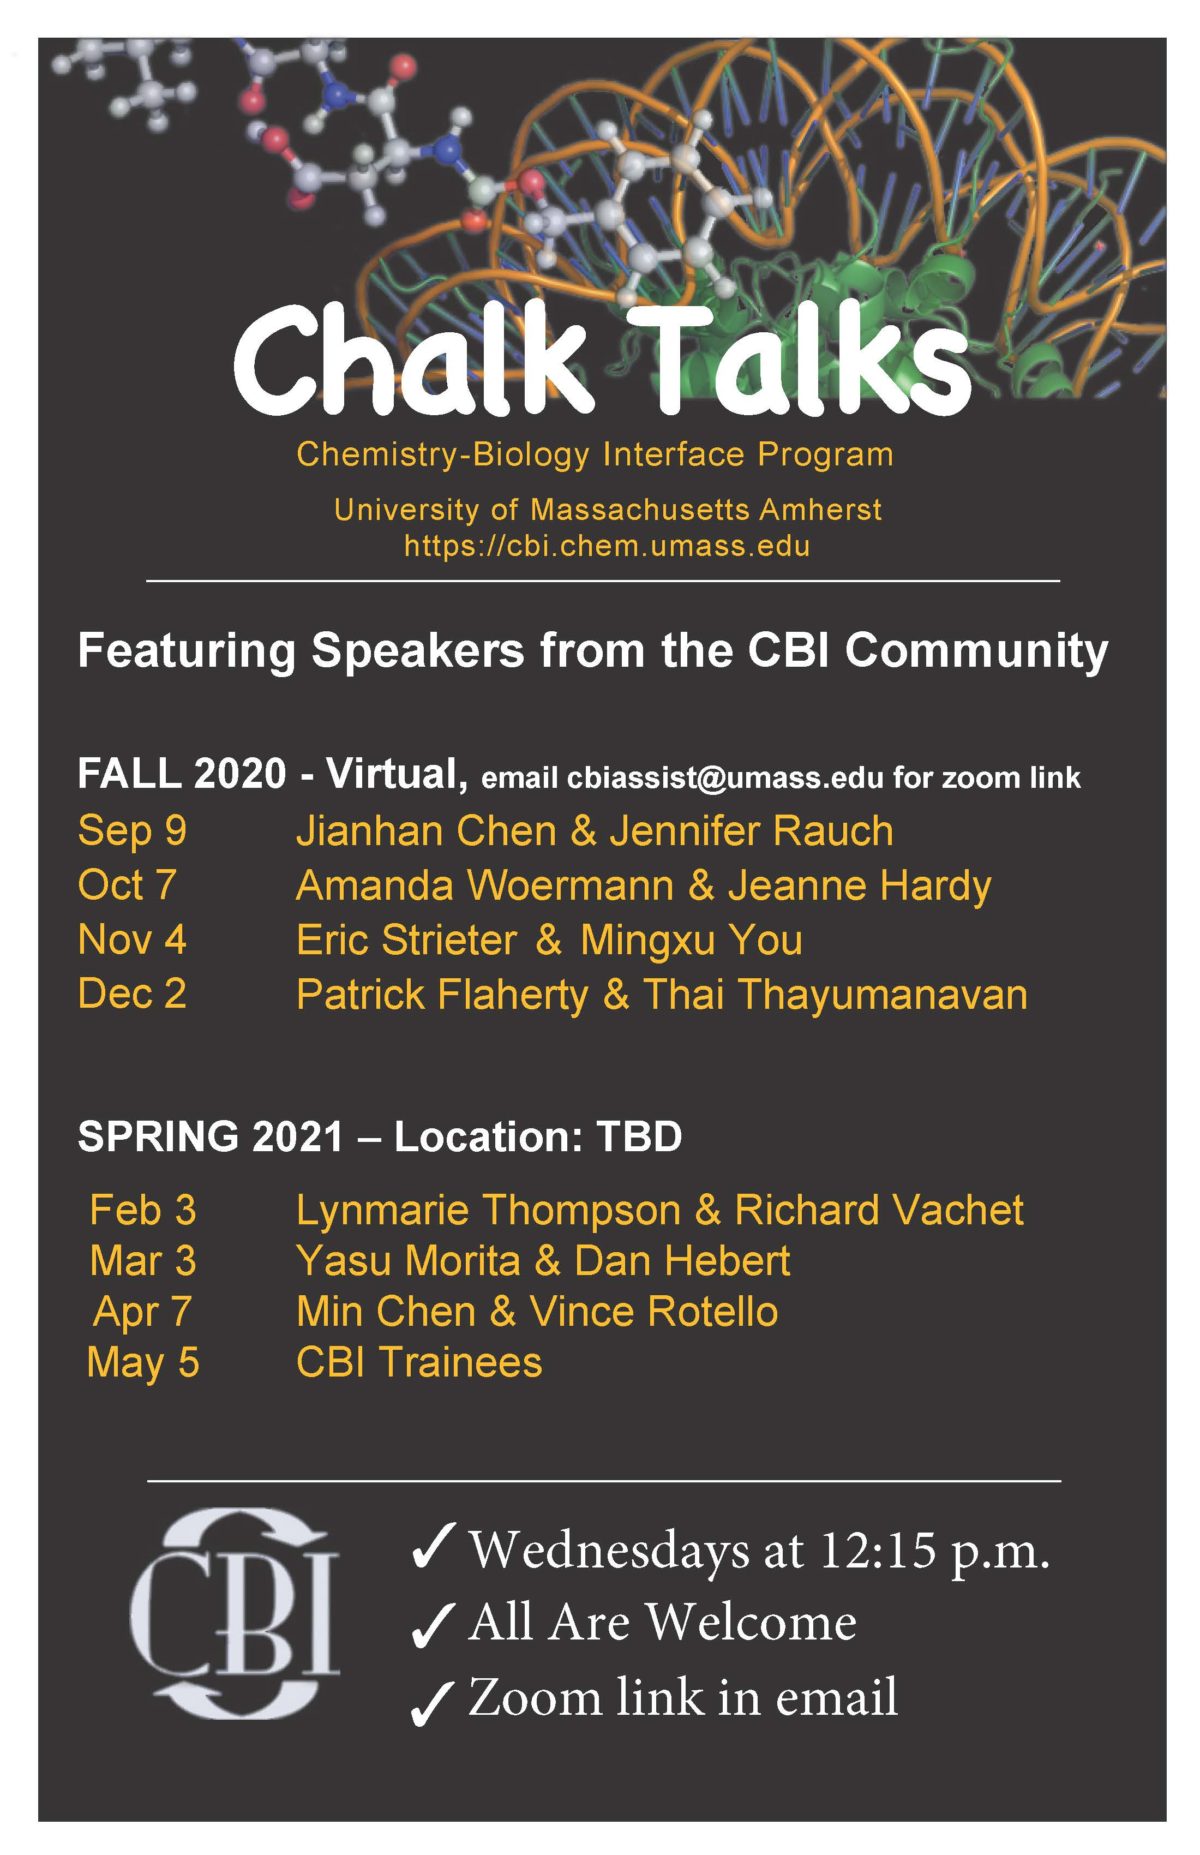 Chalk Talk Poster 2020-2021